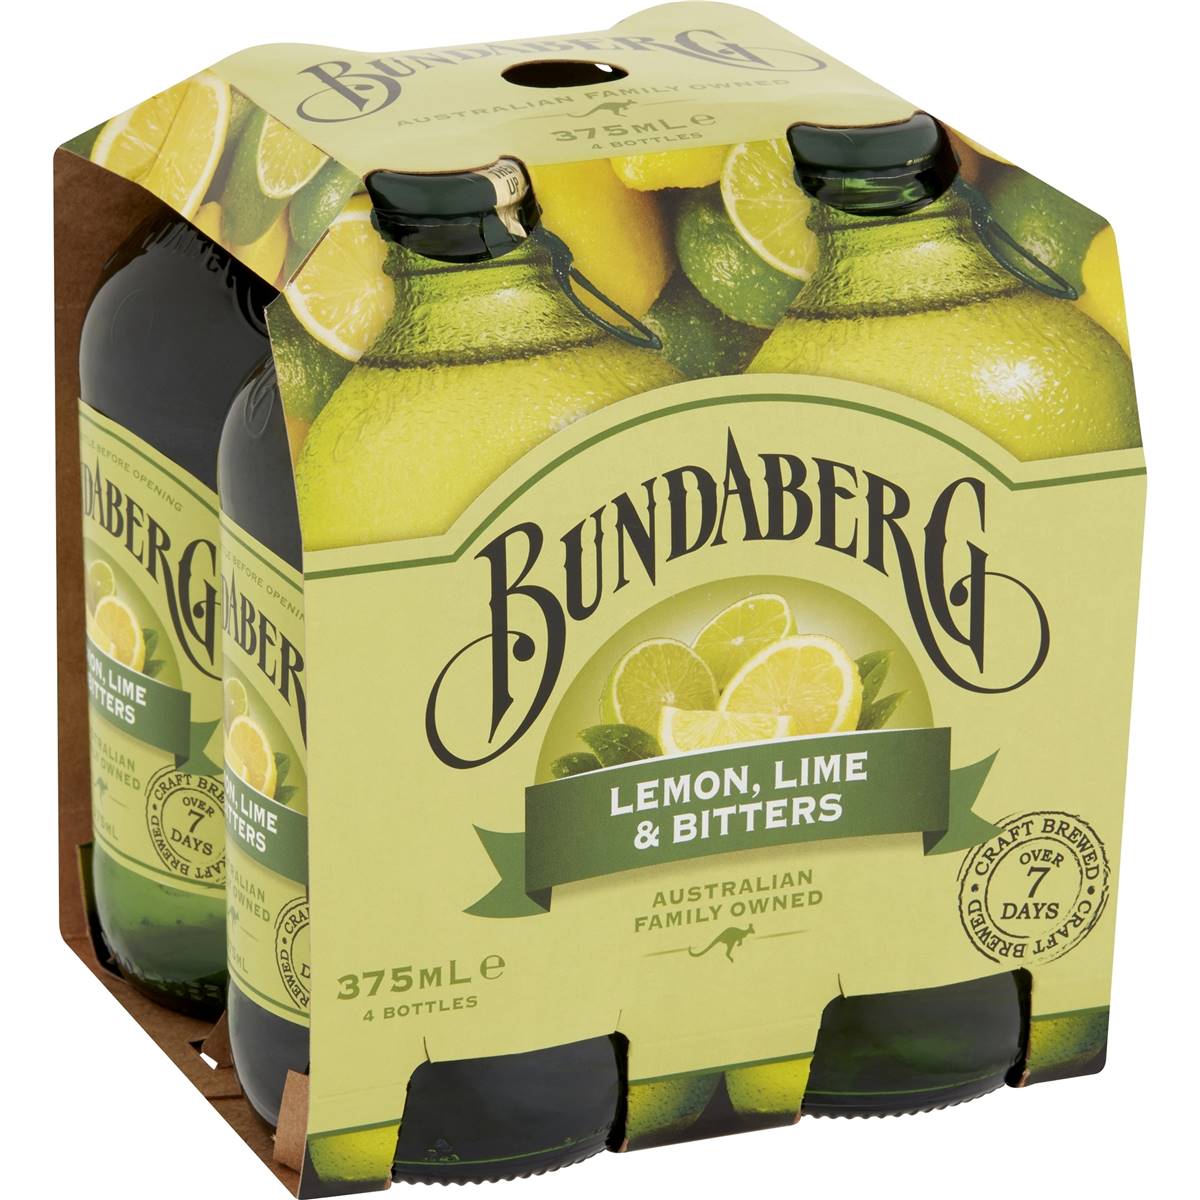 Bundaberg Lemon Lime & Bitters Bottles 4x375ml